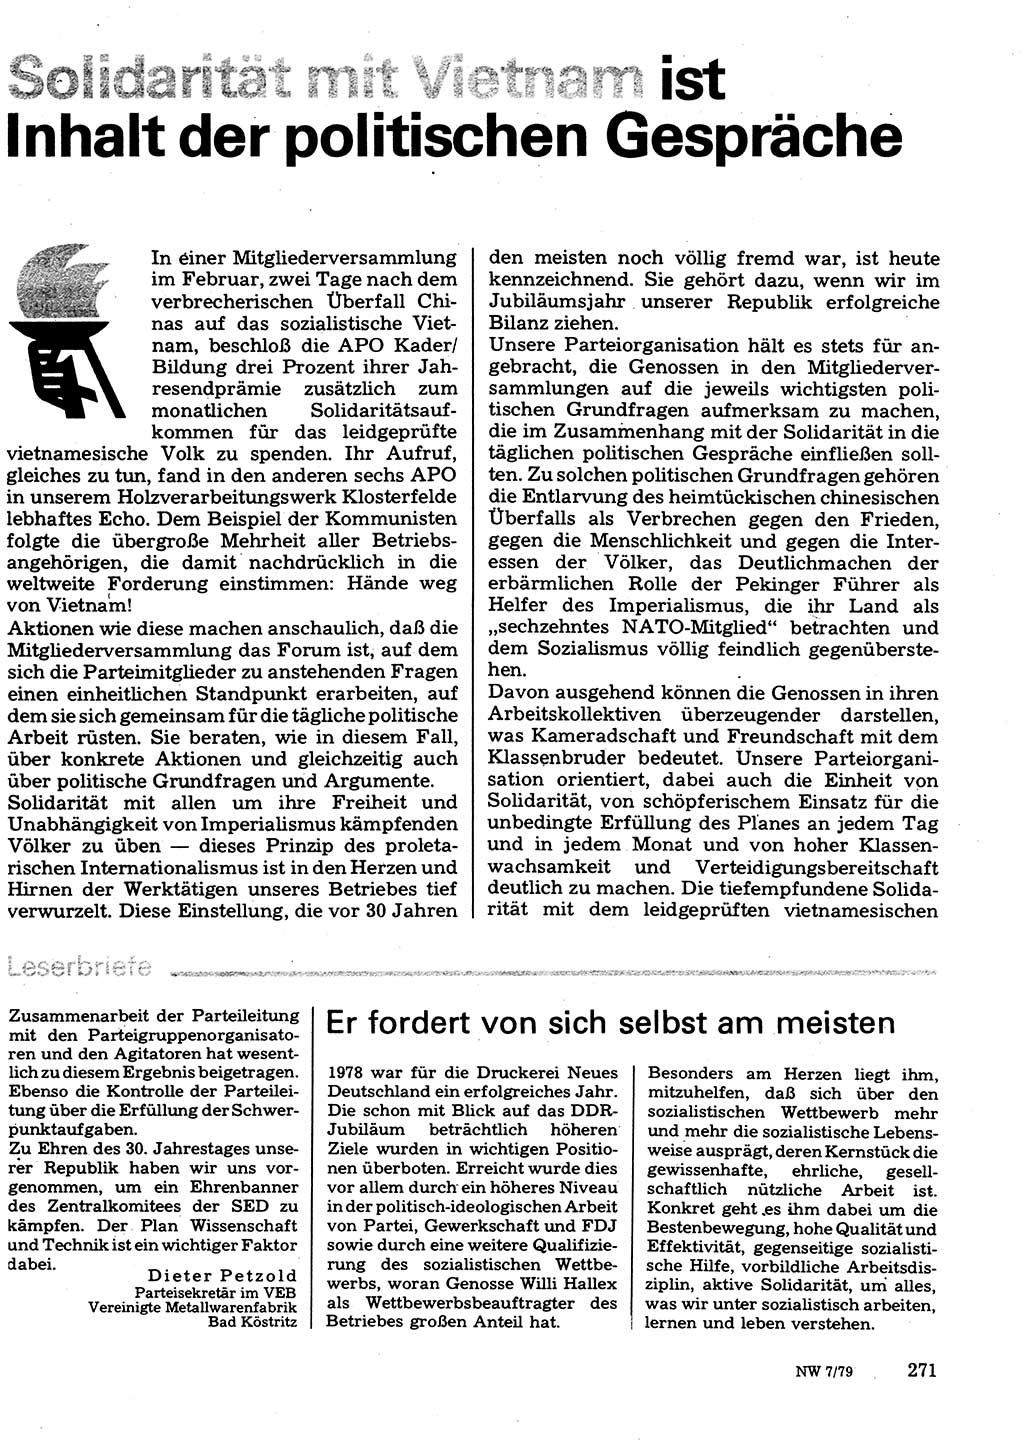 Neuer Weg (NW), Organ des Zentralkomitees (ZK) der SED (Sozialistische Einheitspartei Deutschlands) für Fragen des Parteilebens, 34. Jahrgang [Deutsche Demokratische Republik (DDR)] 1979, Seite 271 (NW ZK SED DDR 1979, S. 271)